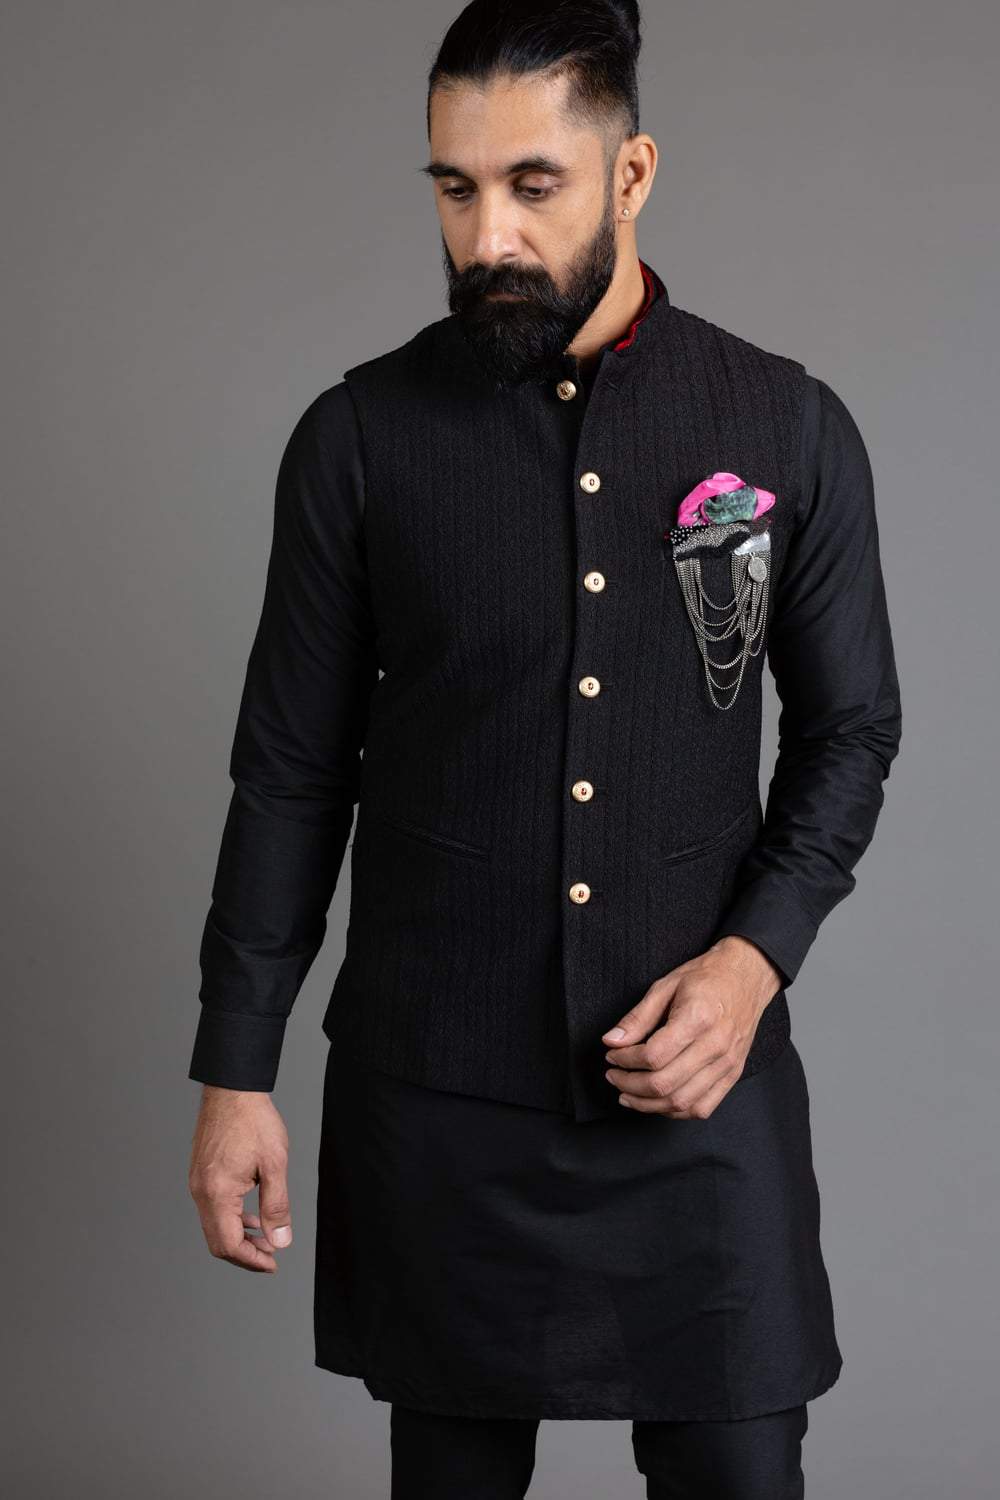 Black Textured Nehru Jacket